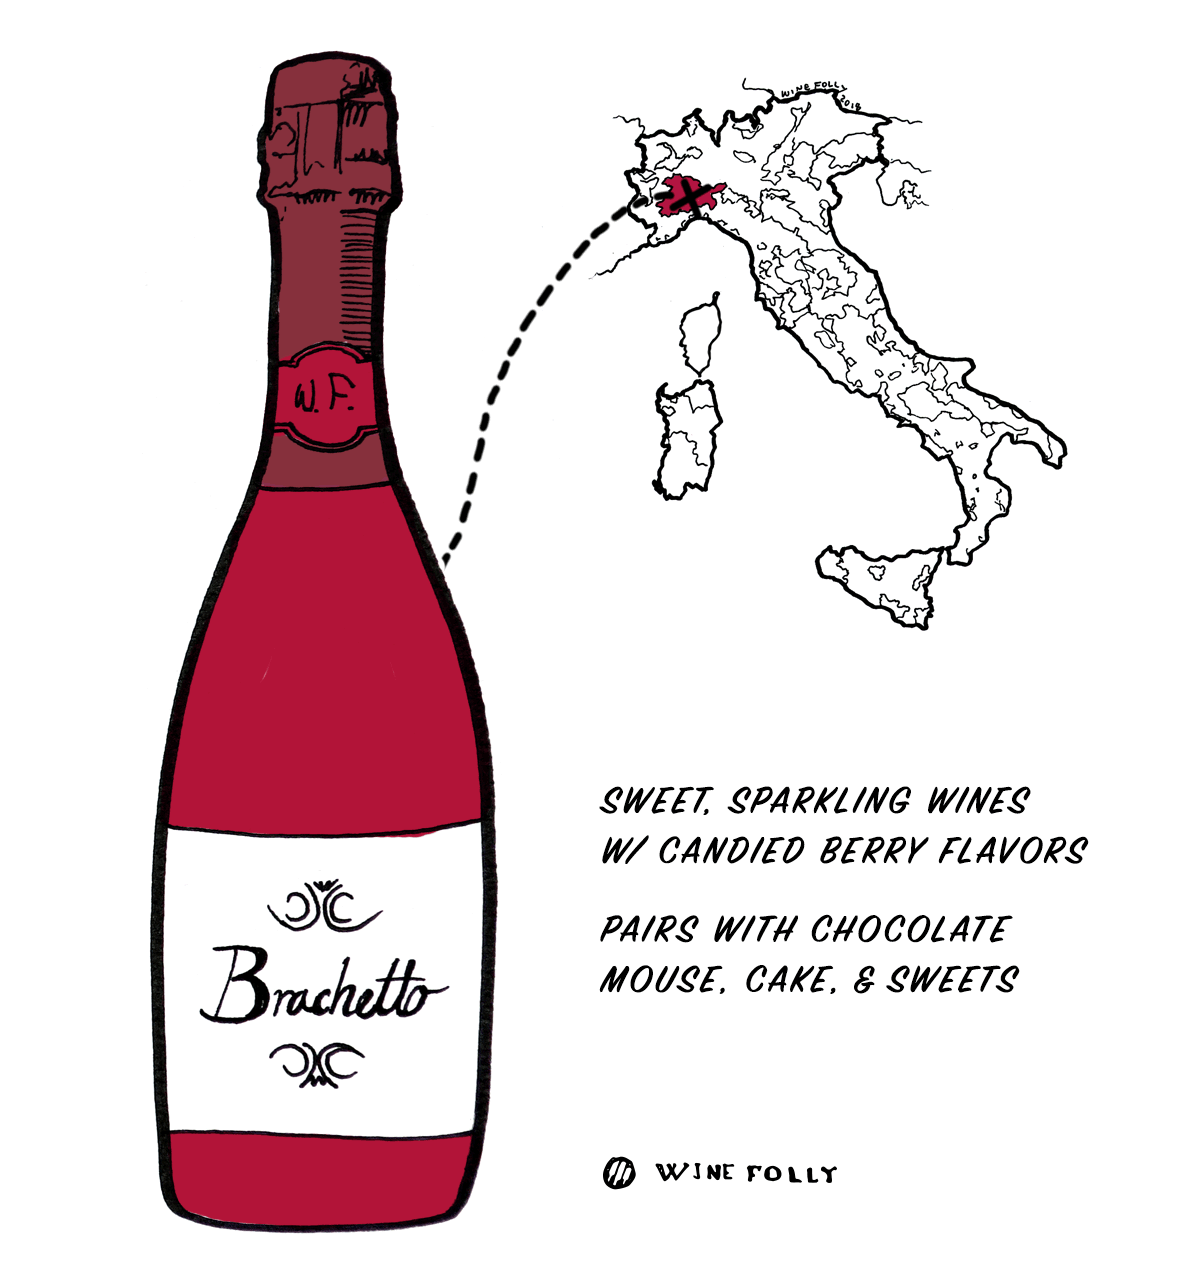 ענב יין אדום Brachetto מאיטליה - בחירה מצוינת למתחילים ליין איטלקי - איור מאת Wine Folly